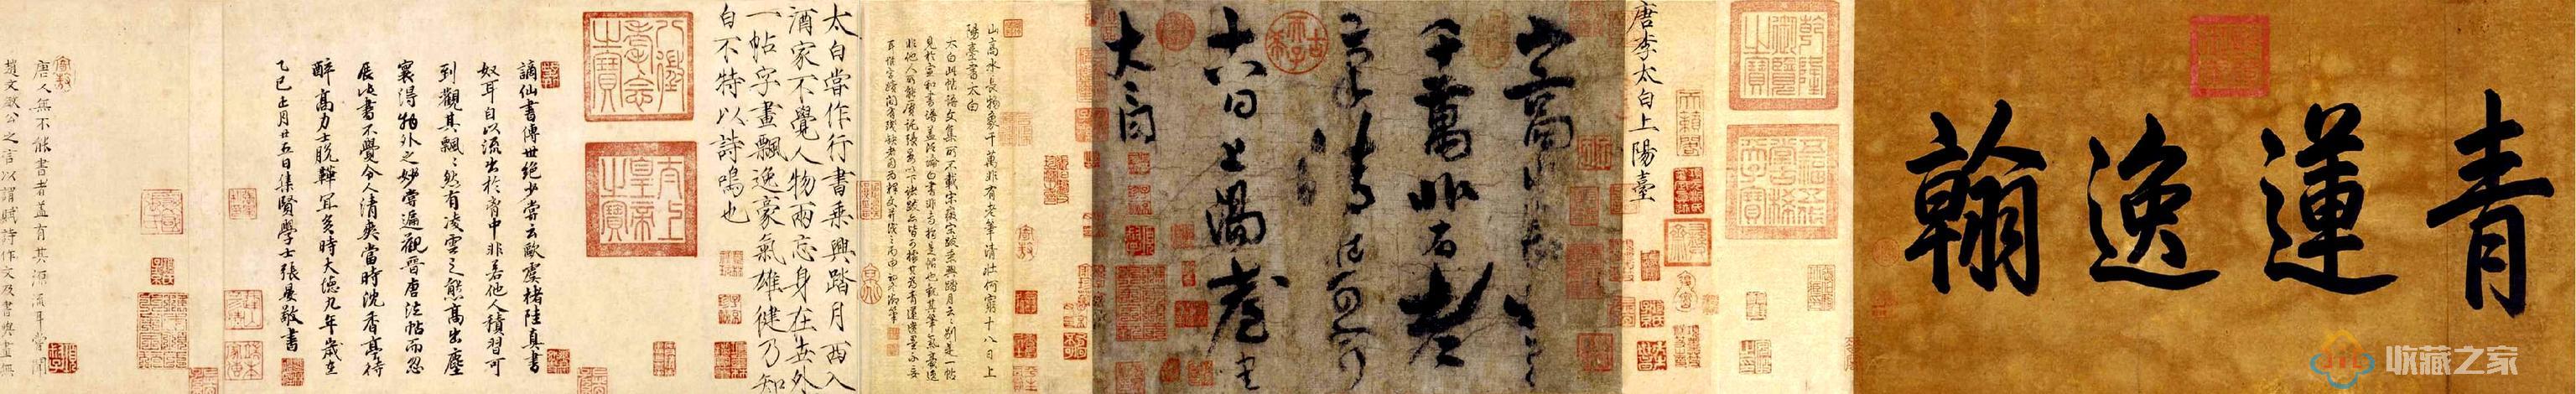 唐代李白《上阳台帖》——李白唯一传世的书法真迹